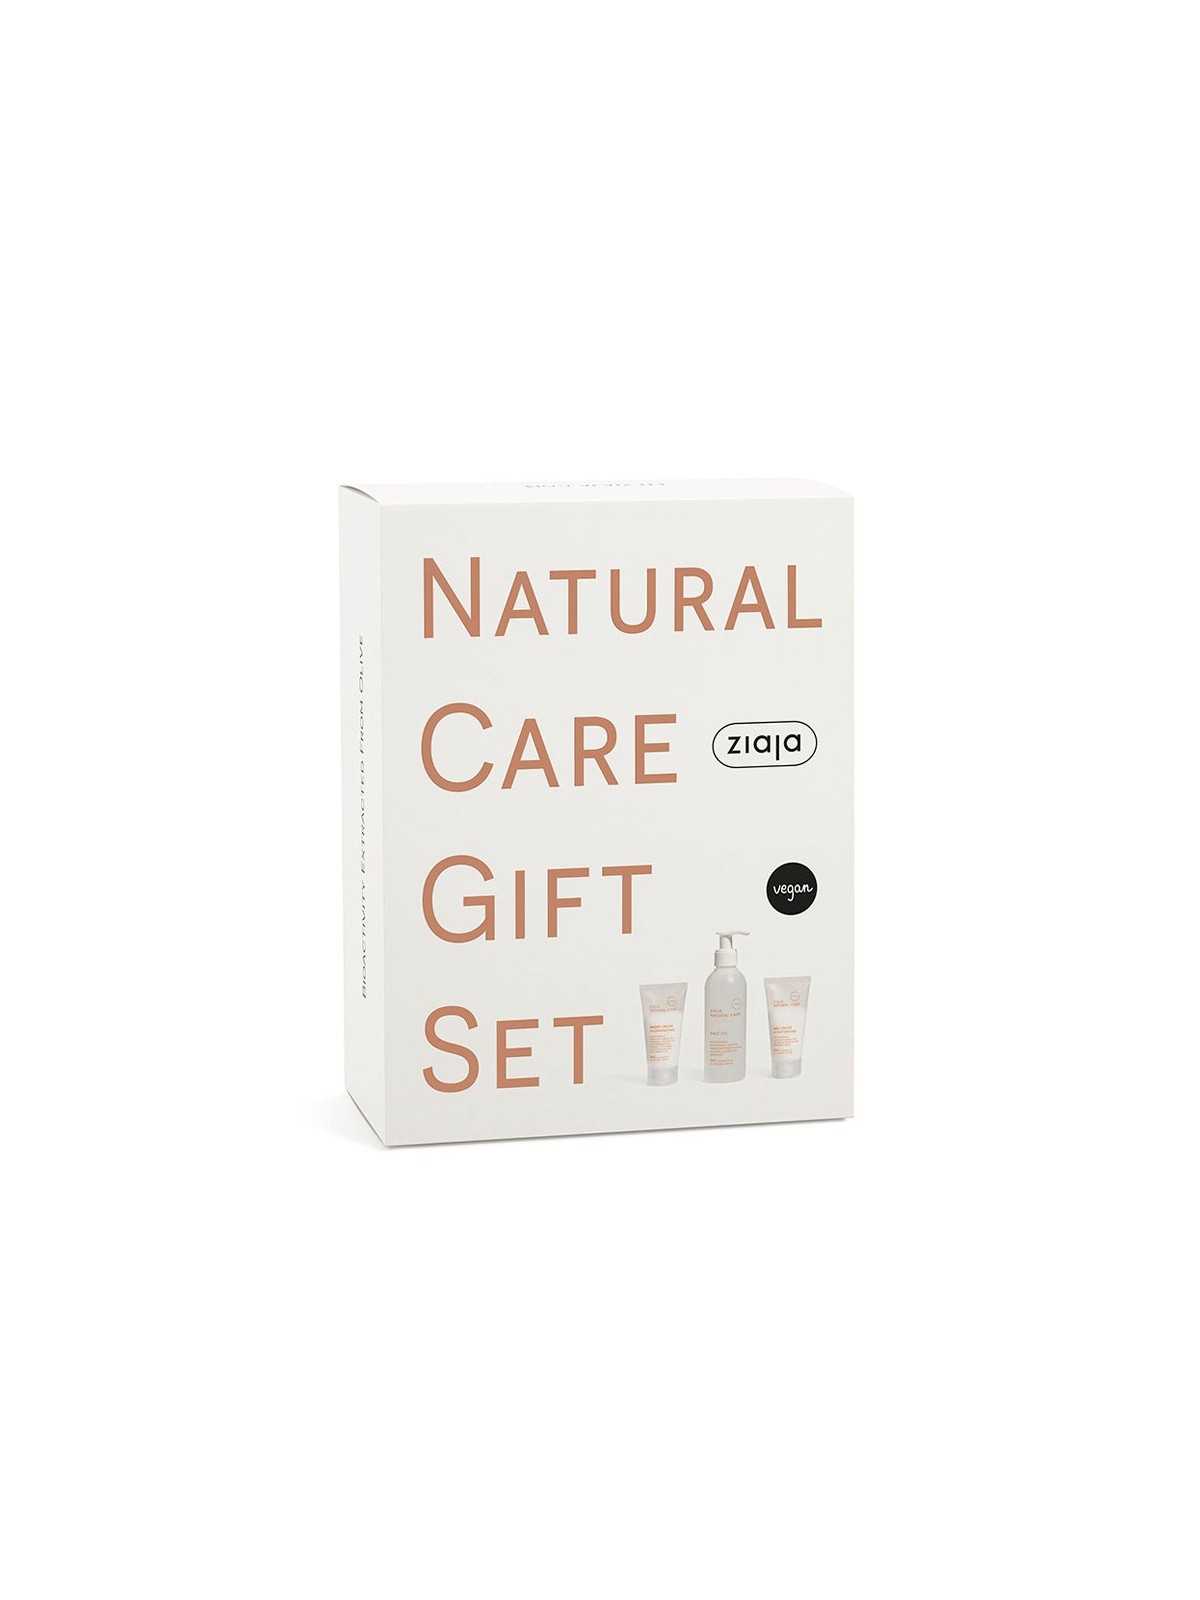 Regala Ziaja Set de regalo Natural Care - Incluye Crema de día, noche y gel facial con nuestra selección de Ideas para regalar por tan sólo 10,93 € o precio específico 10,93 € en Thalie Care